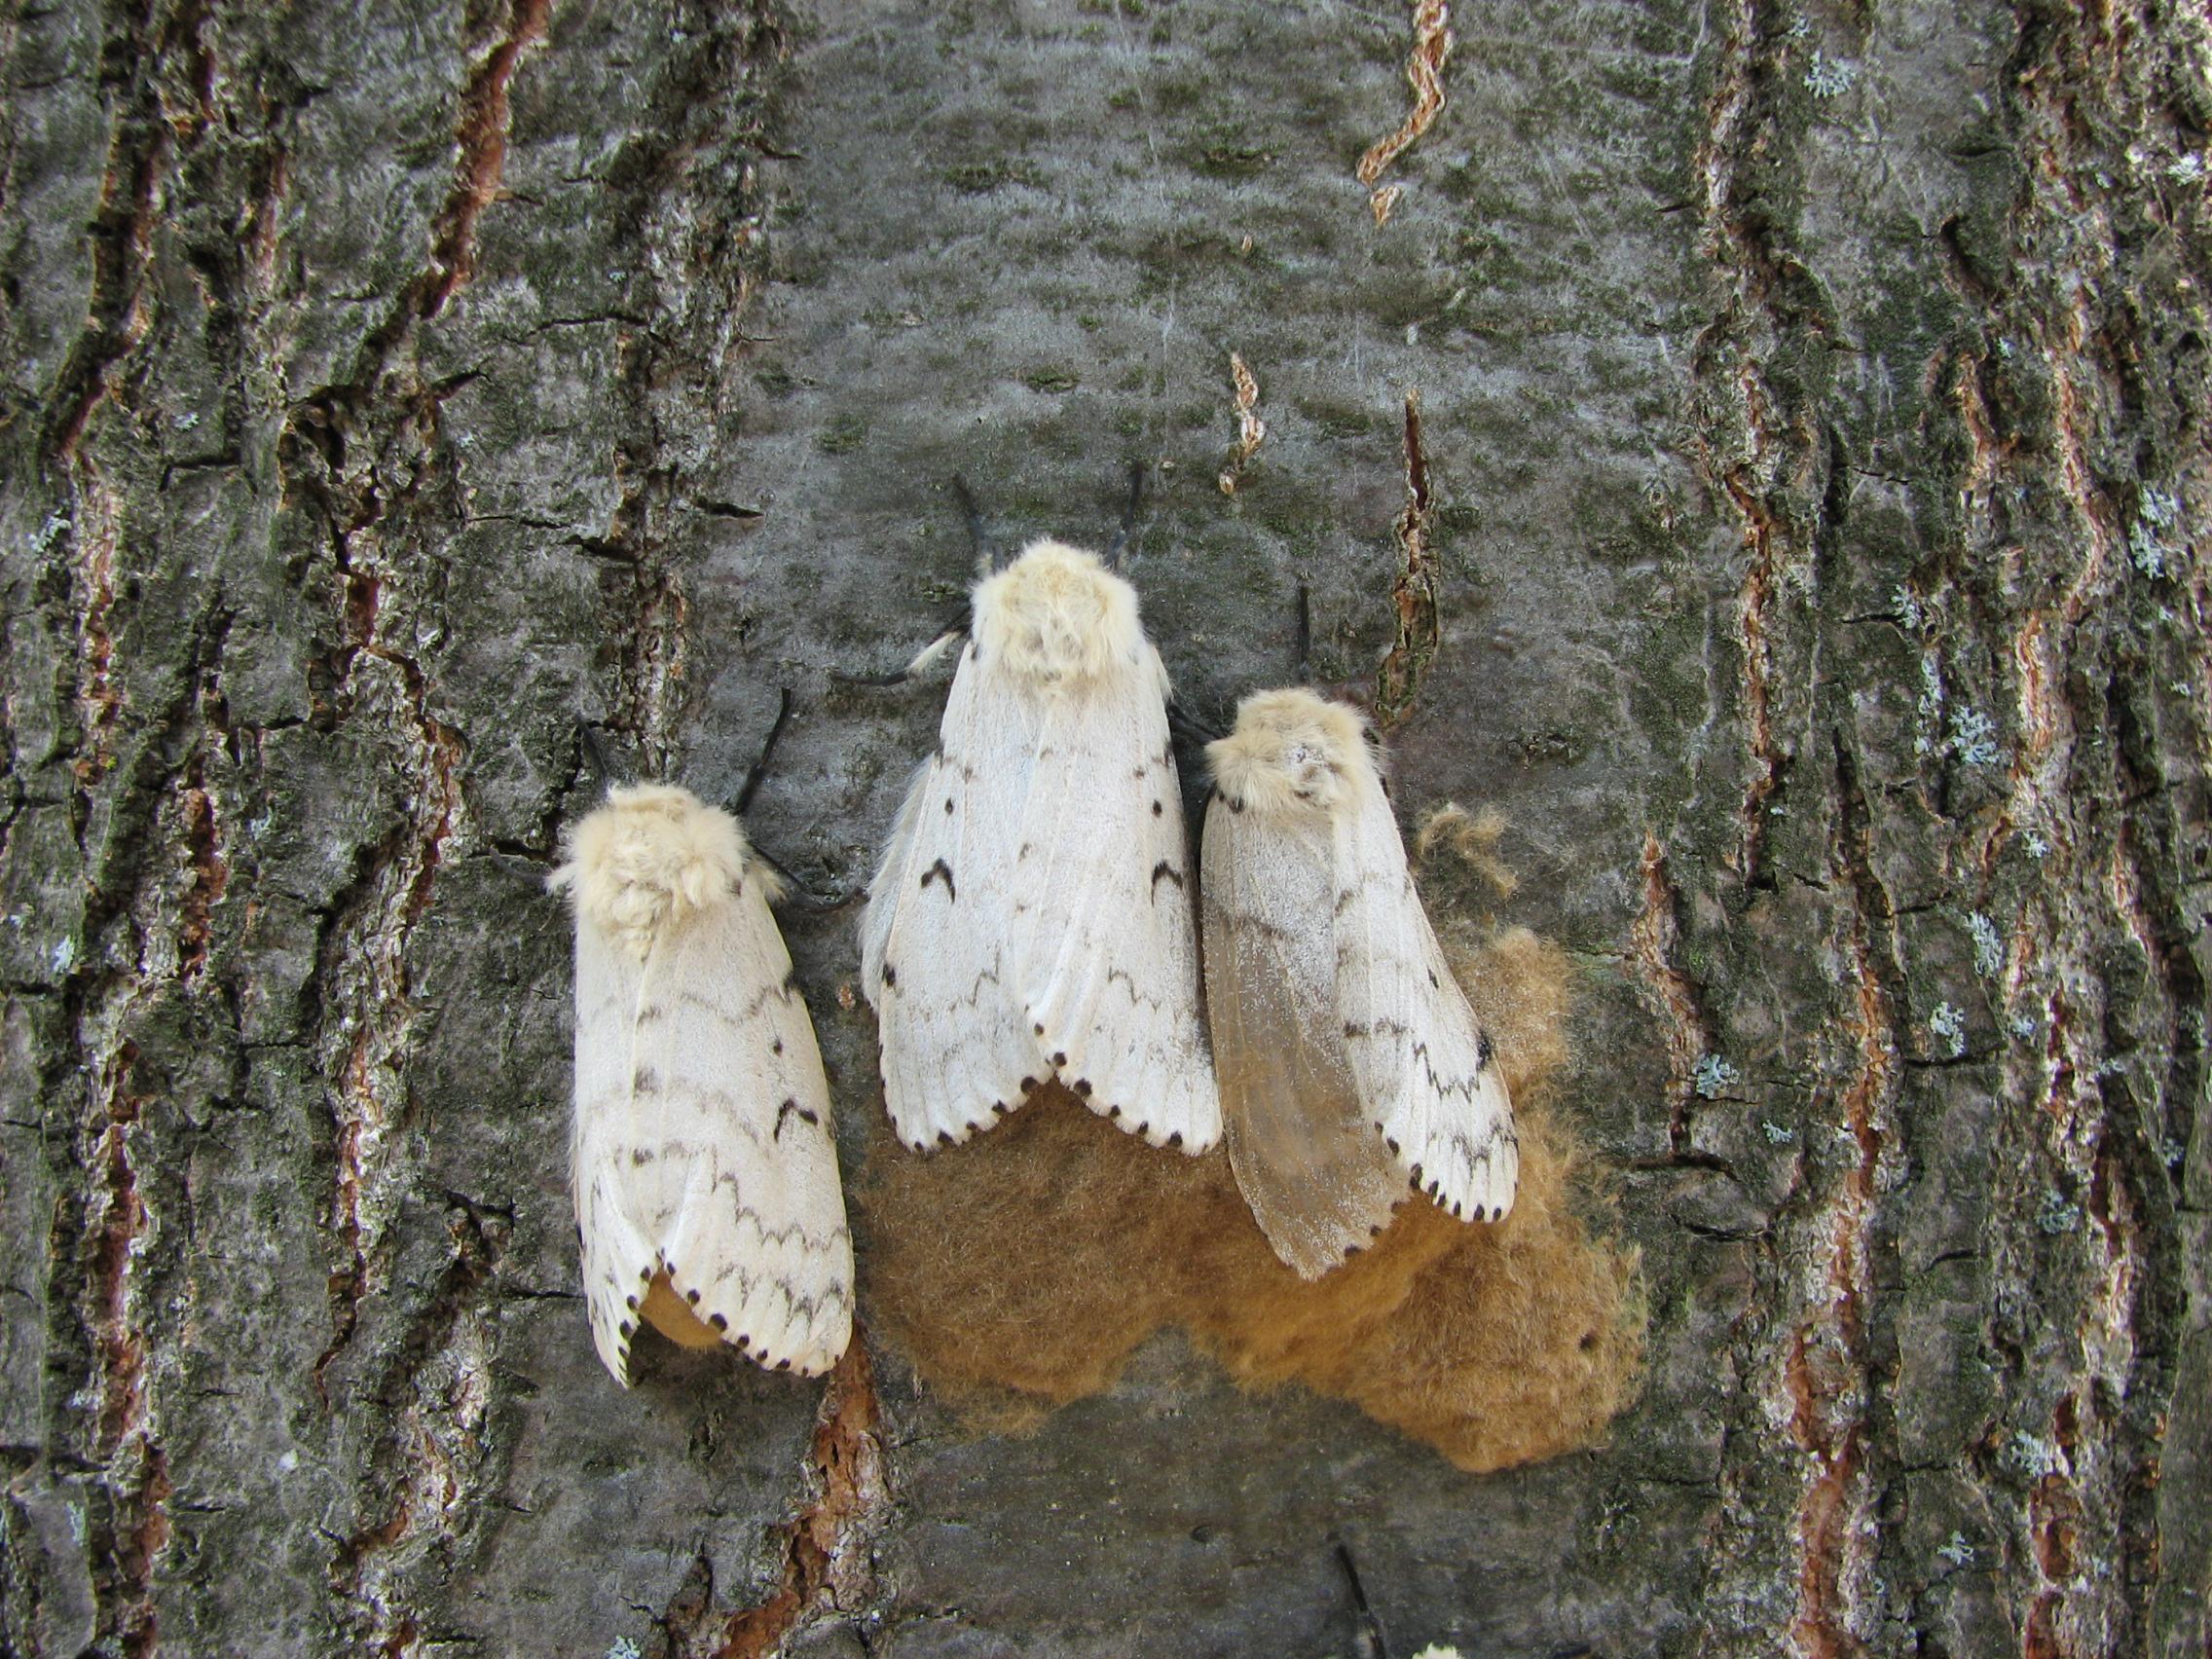 Gypsy Moths